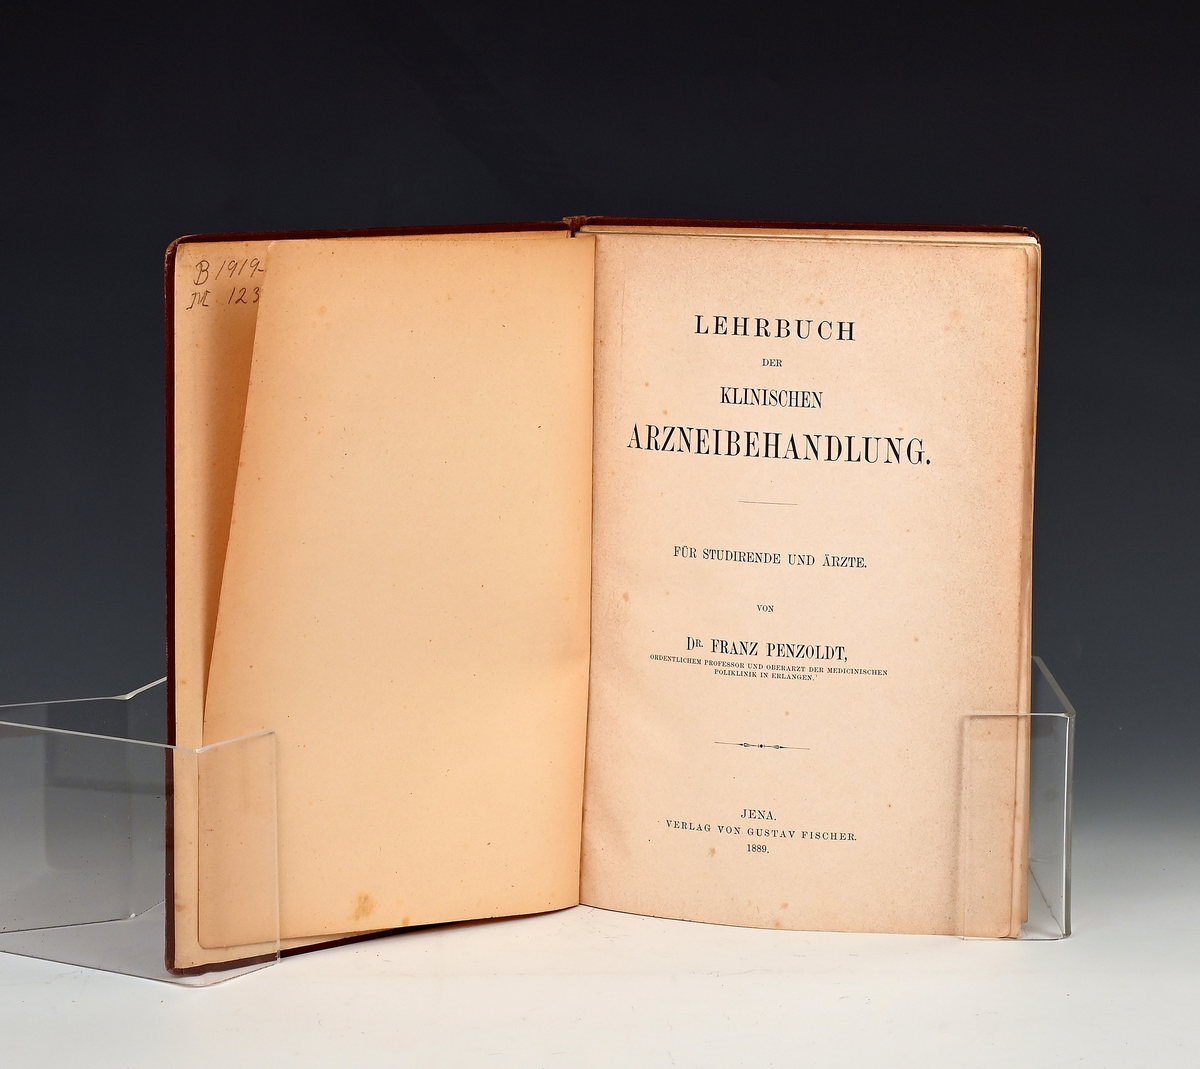 Prot: dr. Franz Penzholdt: Lehrbuch der Klinischen Arzneibehandlung.
Jena 1889.